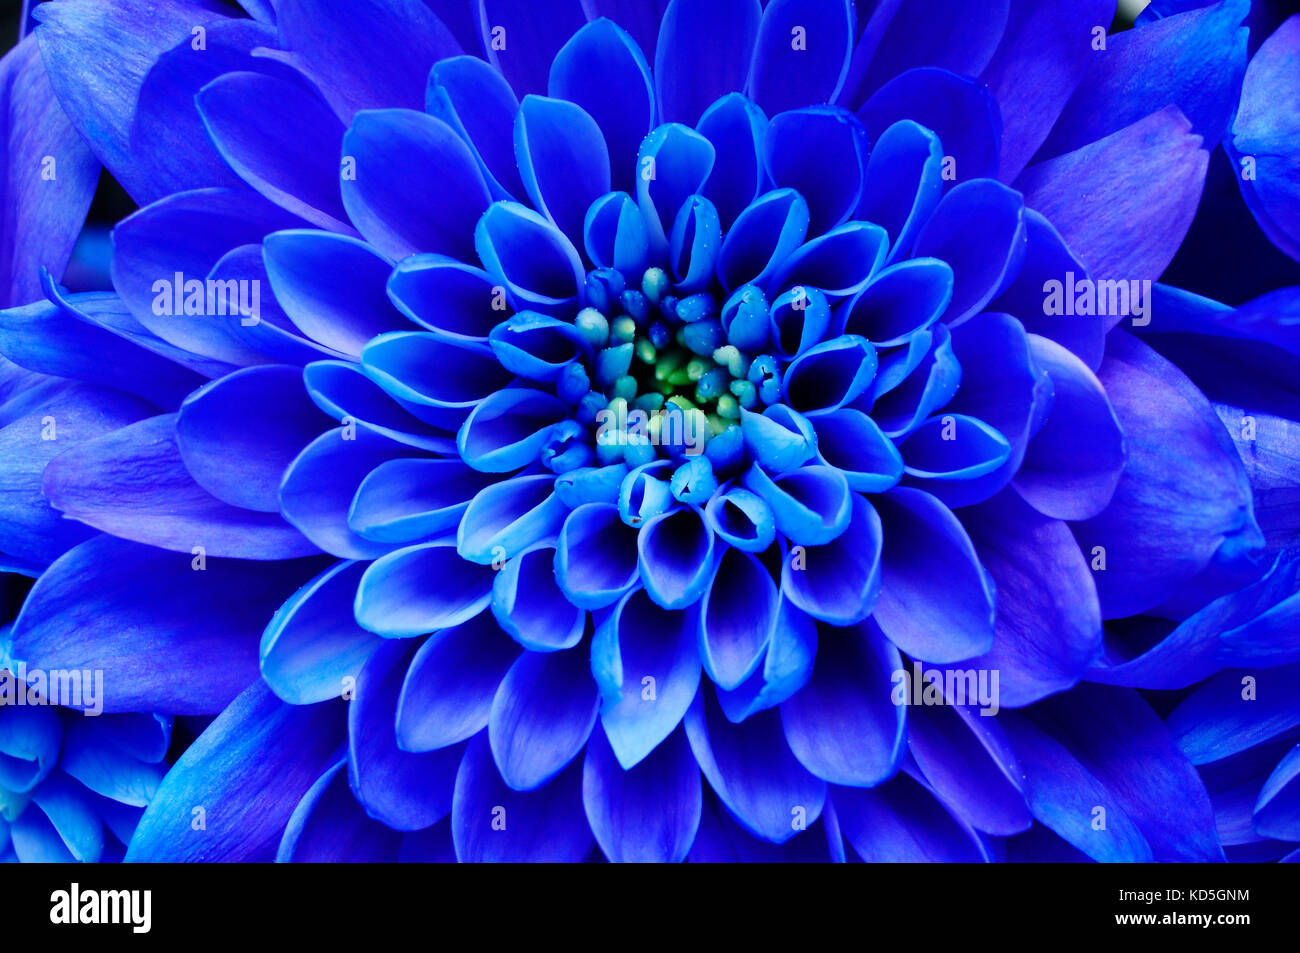 Fleur fond bleu : close up de fleur bleue, aster avec pétales bleu pour le fond ou la texture Banque D'Images